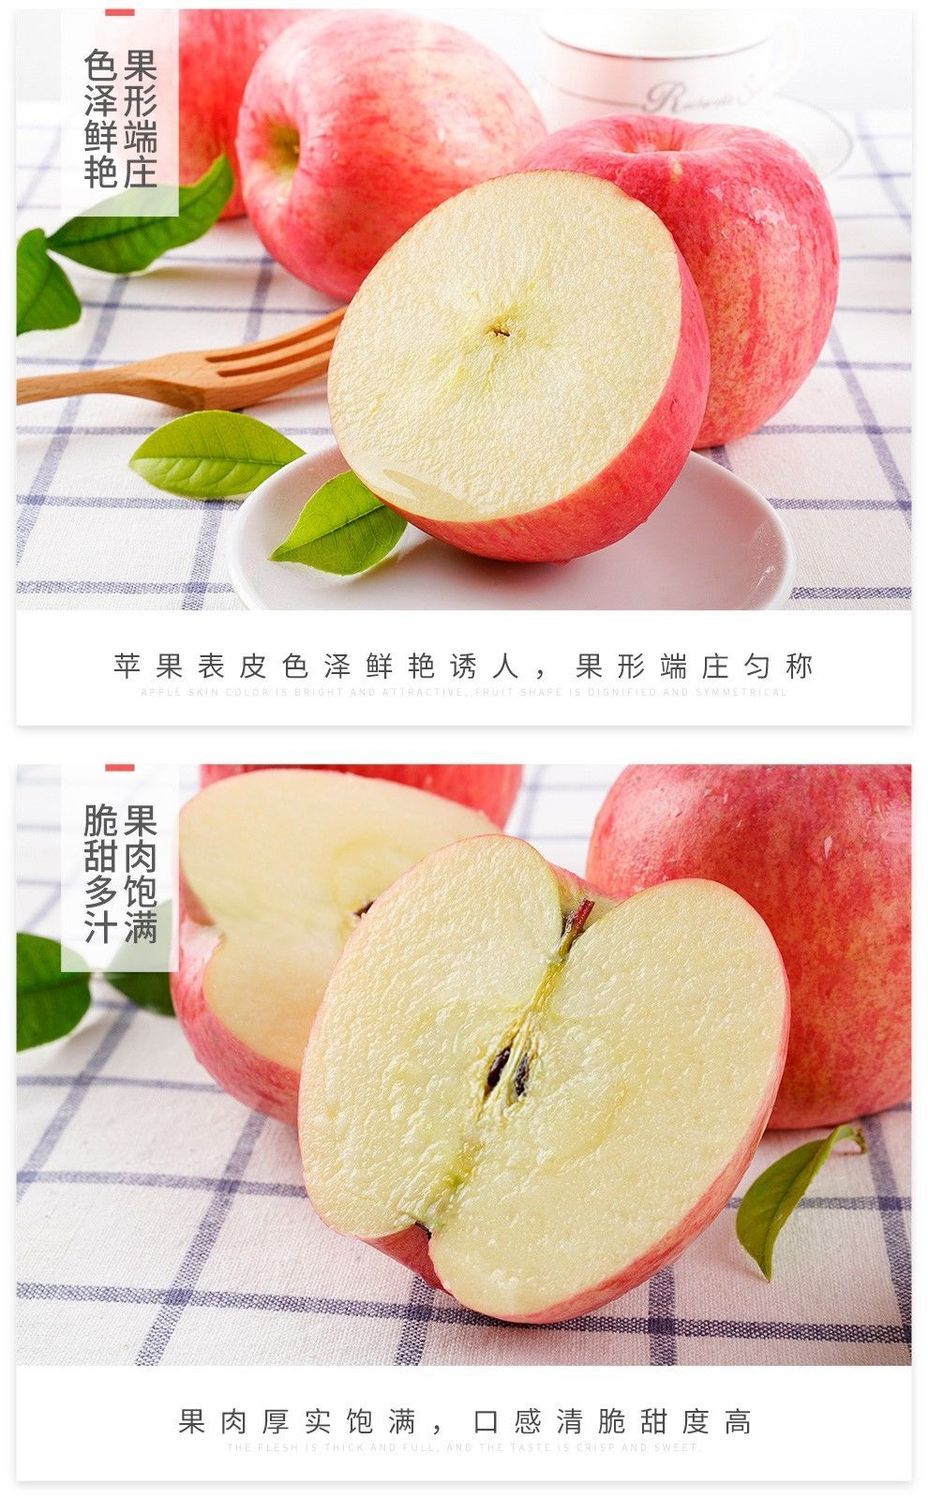 【超低价抢购】陕西红富士苹果水果冰糖心超脆甜10/5/3斤整箱批发